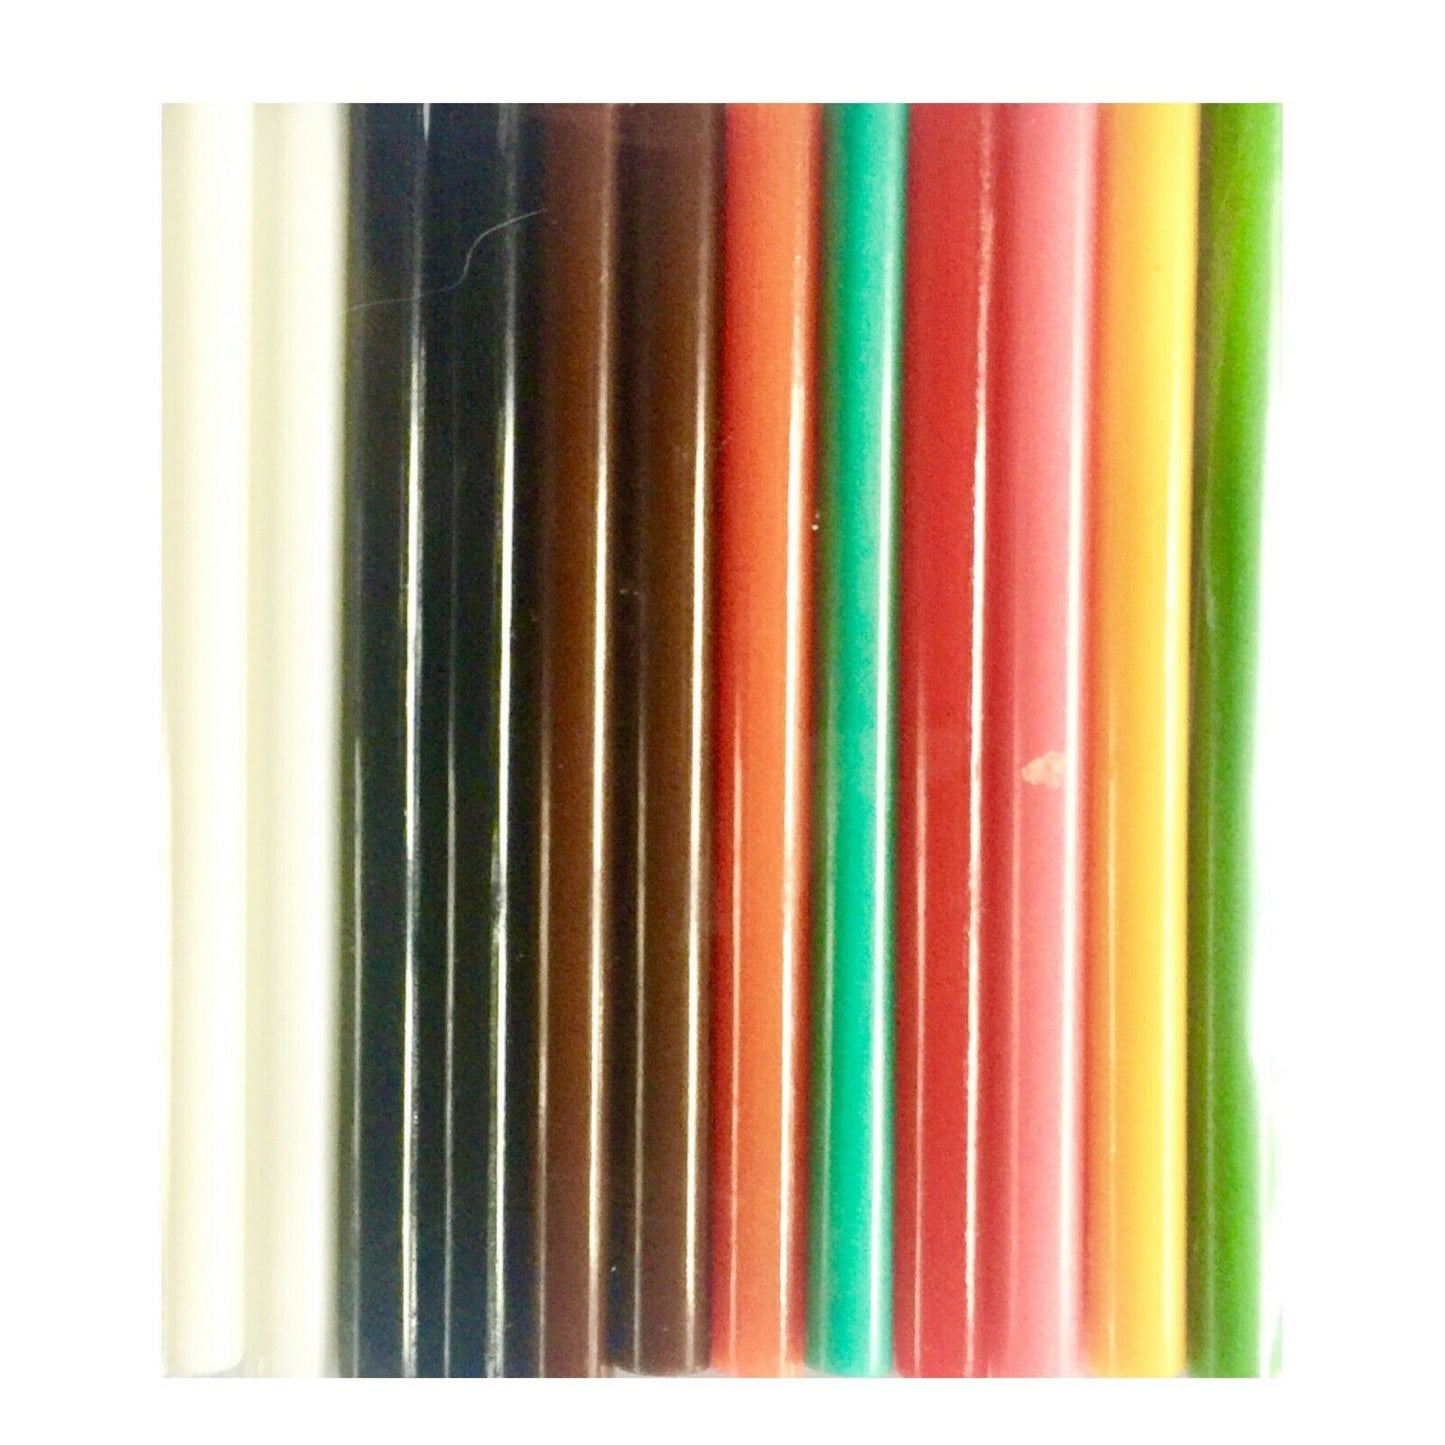 12x /10x Multi Coloured 10cm Glue Stick for Crafts